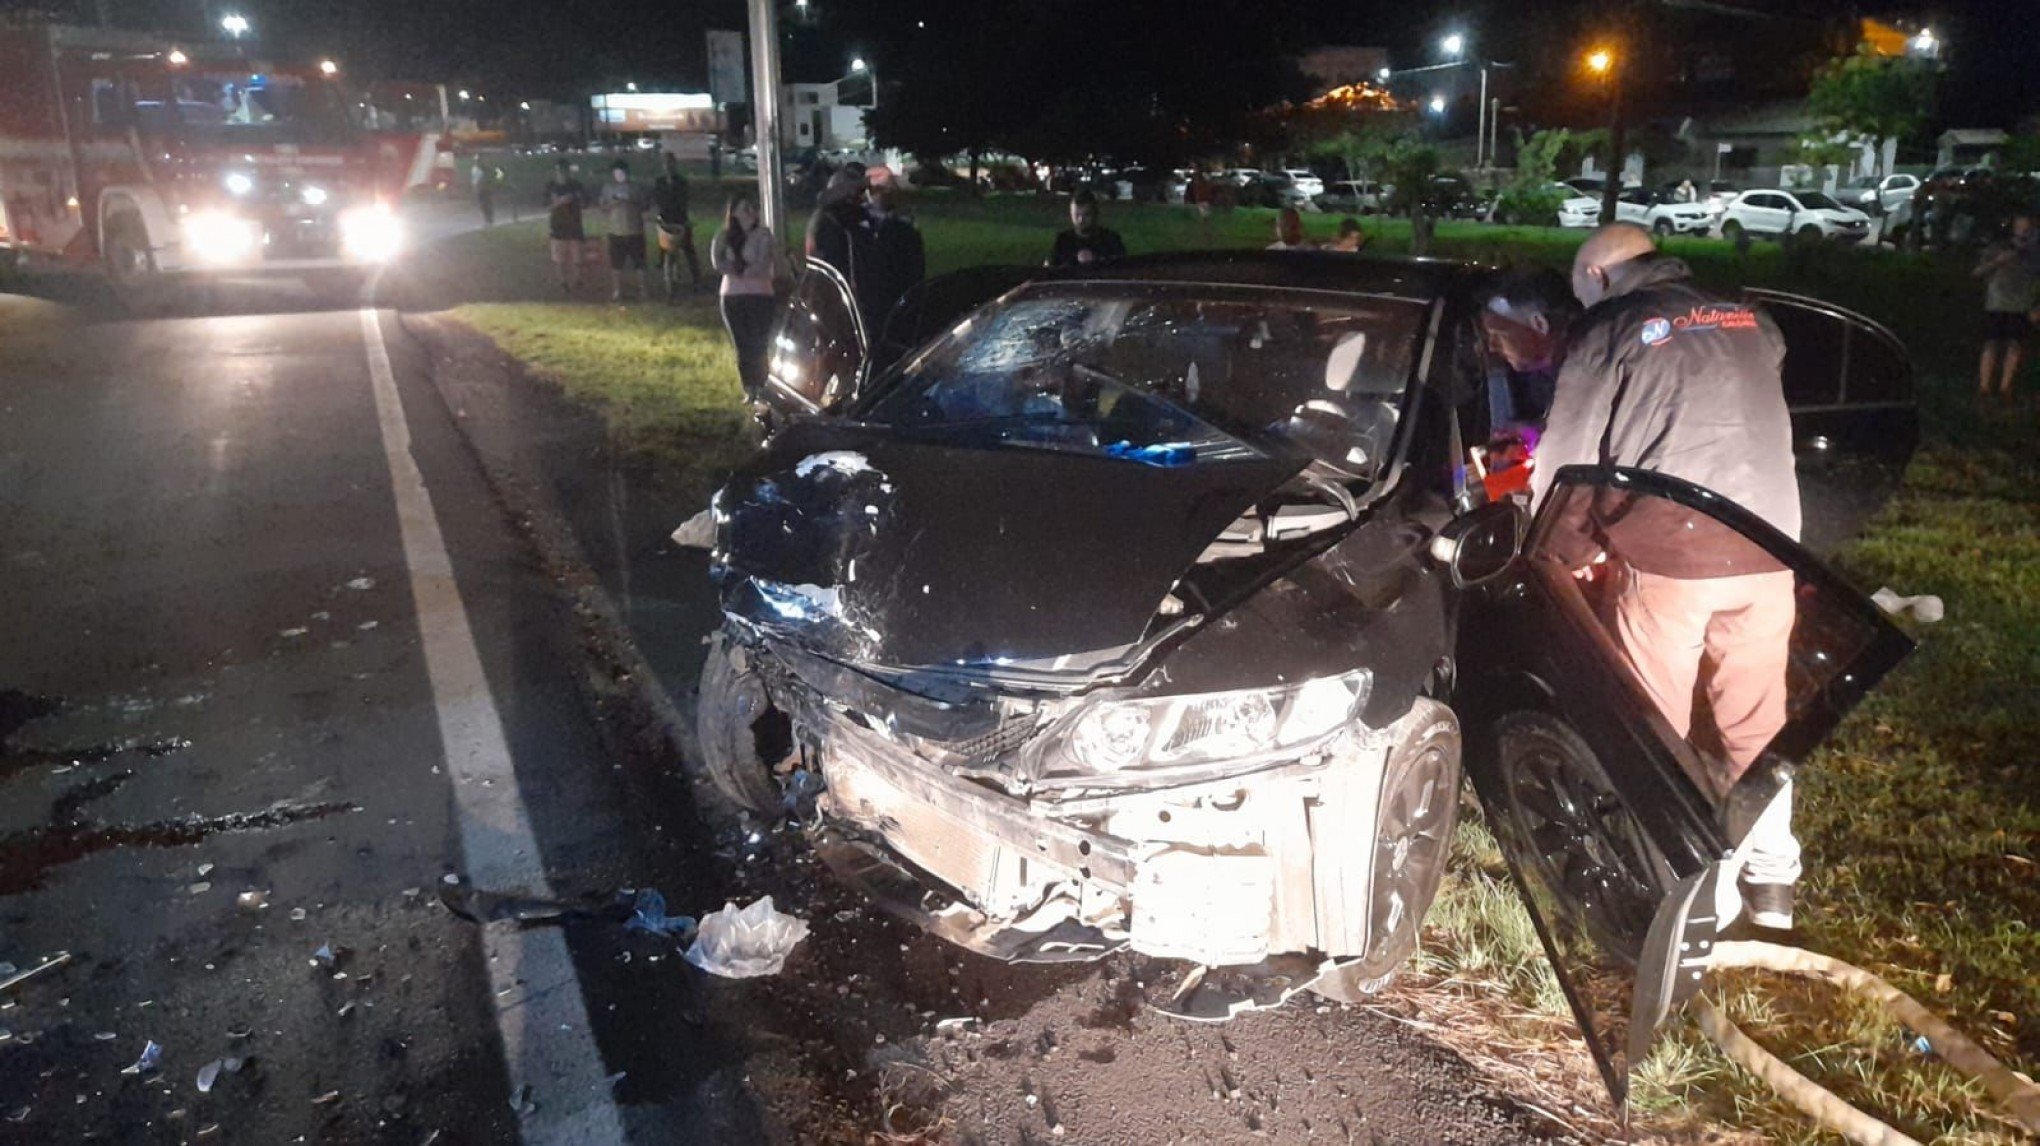 ACIDENTE DE TRÂNSITO: Família atingida por motorista embriagado estava a caminho de realizar sonho de conhecer Gramado